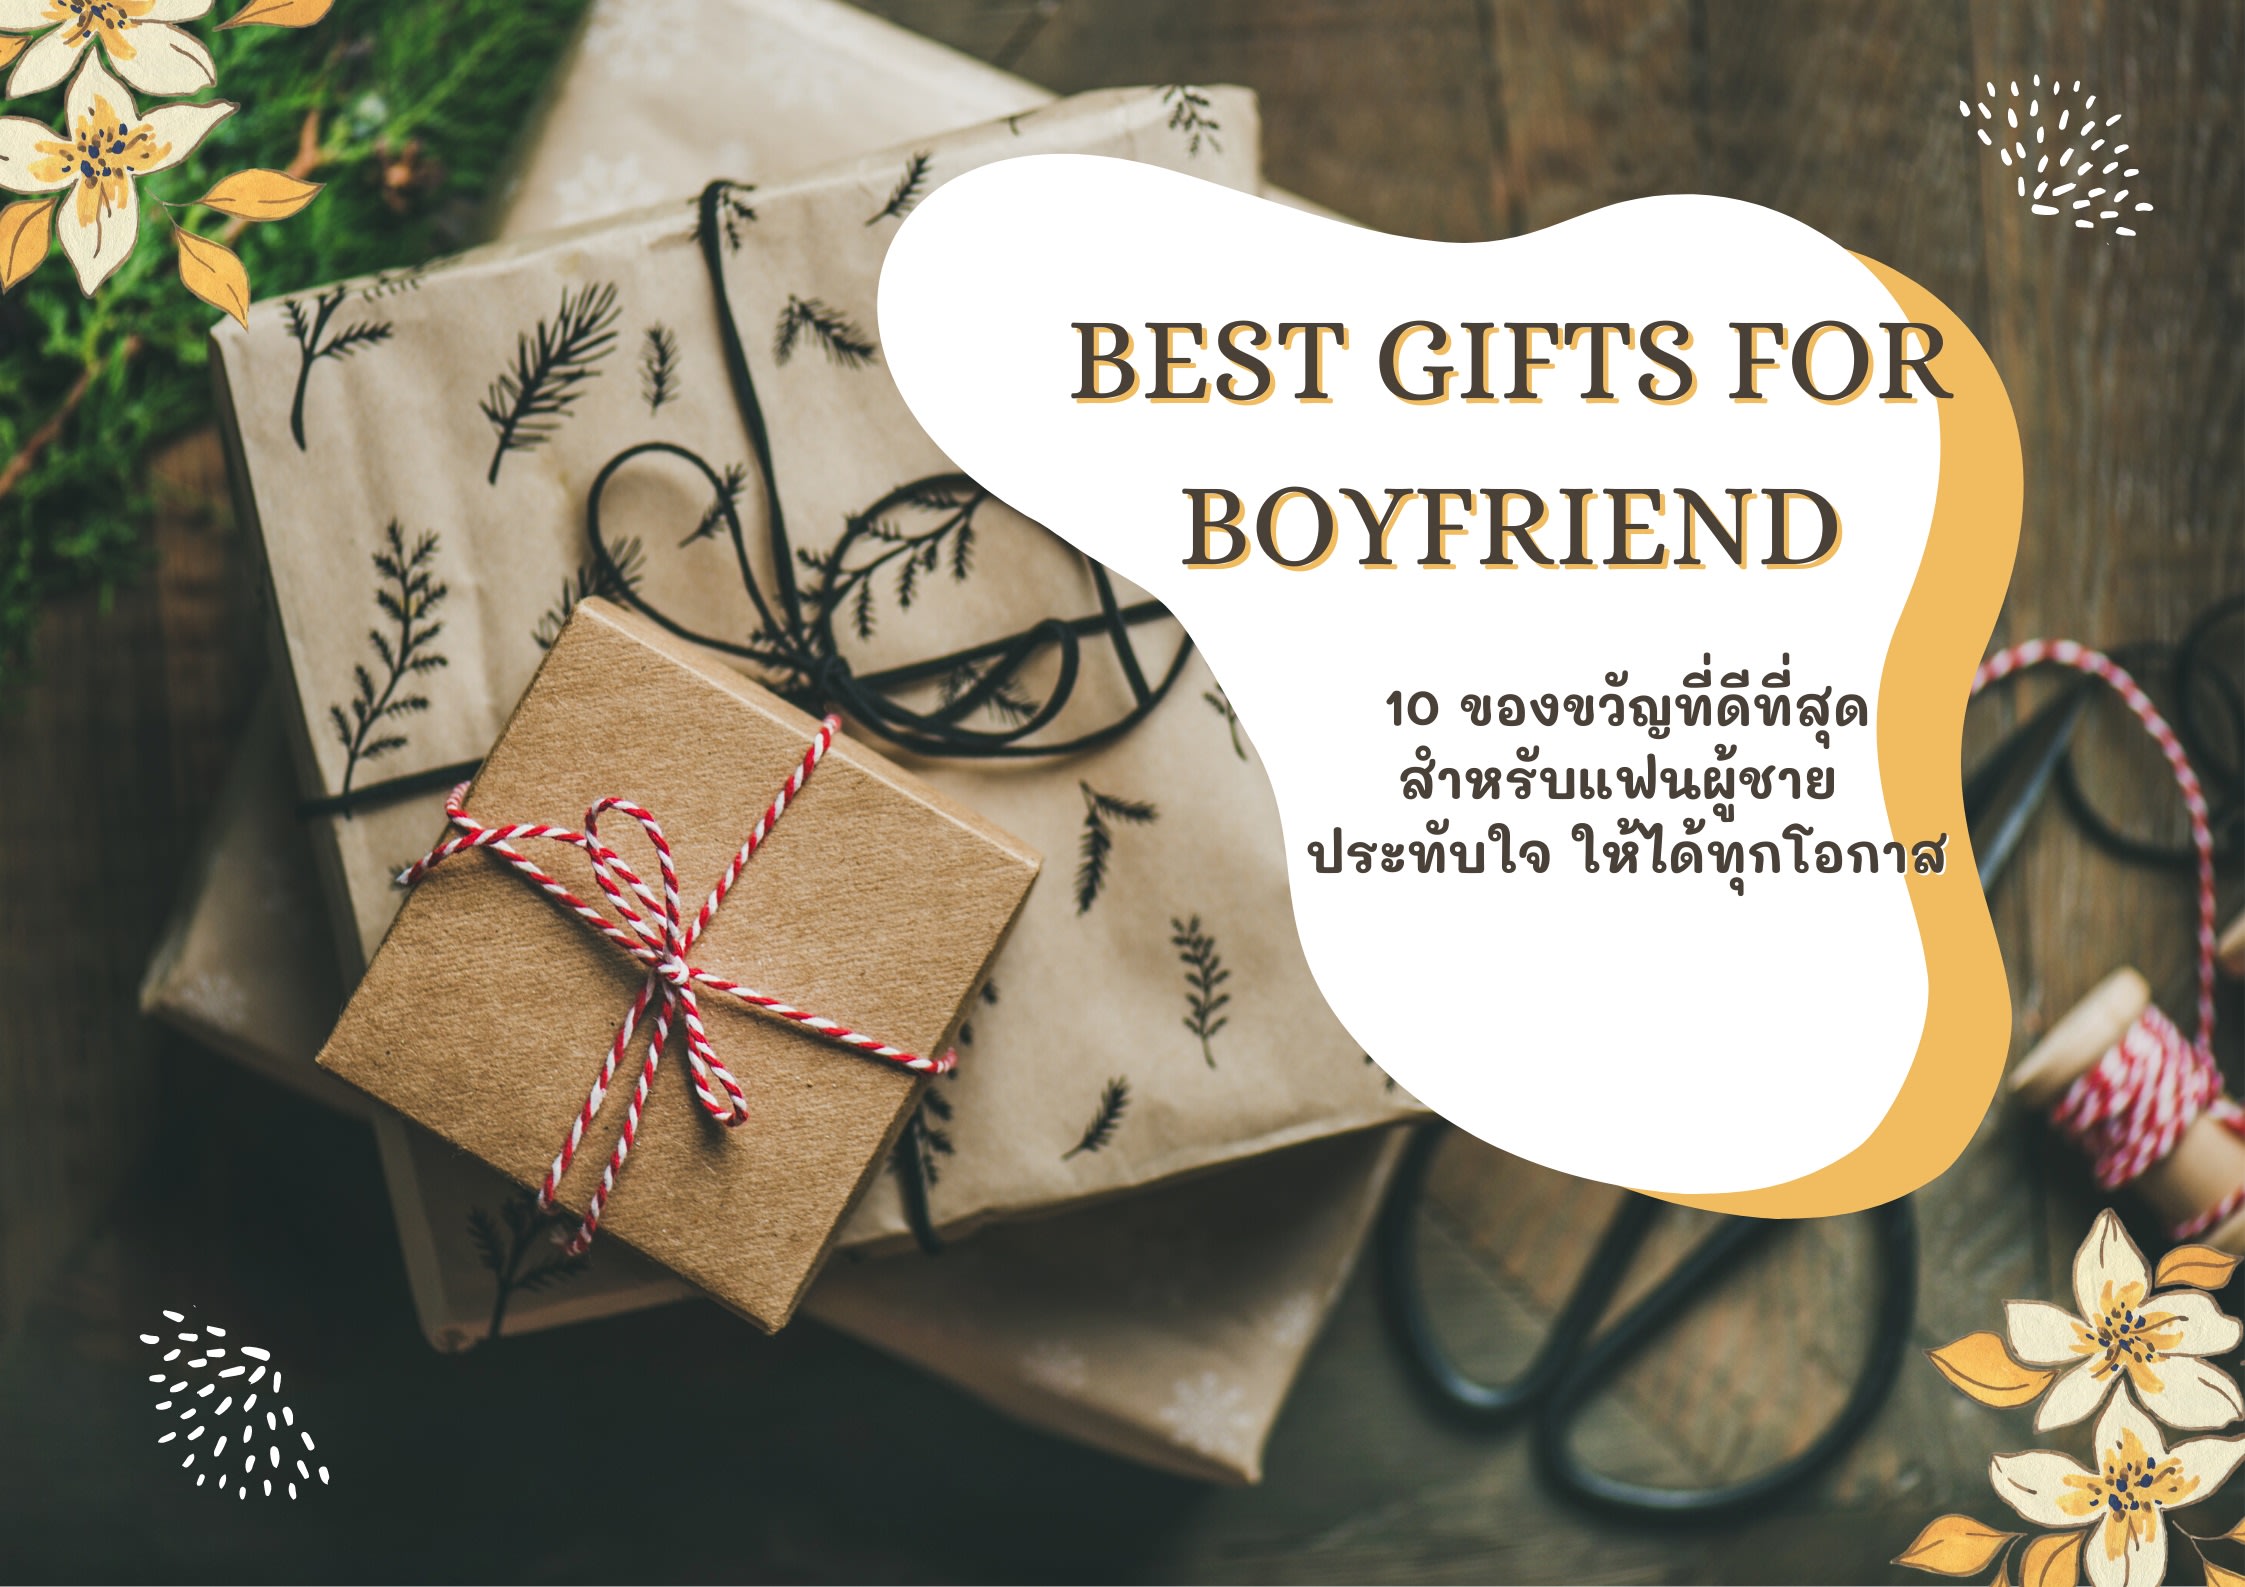 Best Gifts for Boyfriend